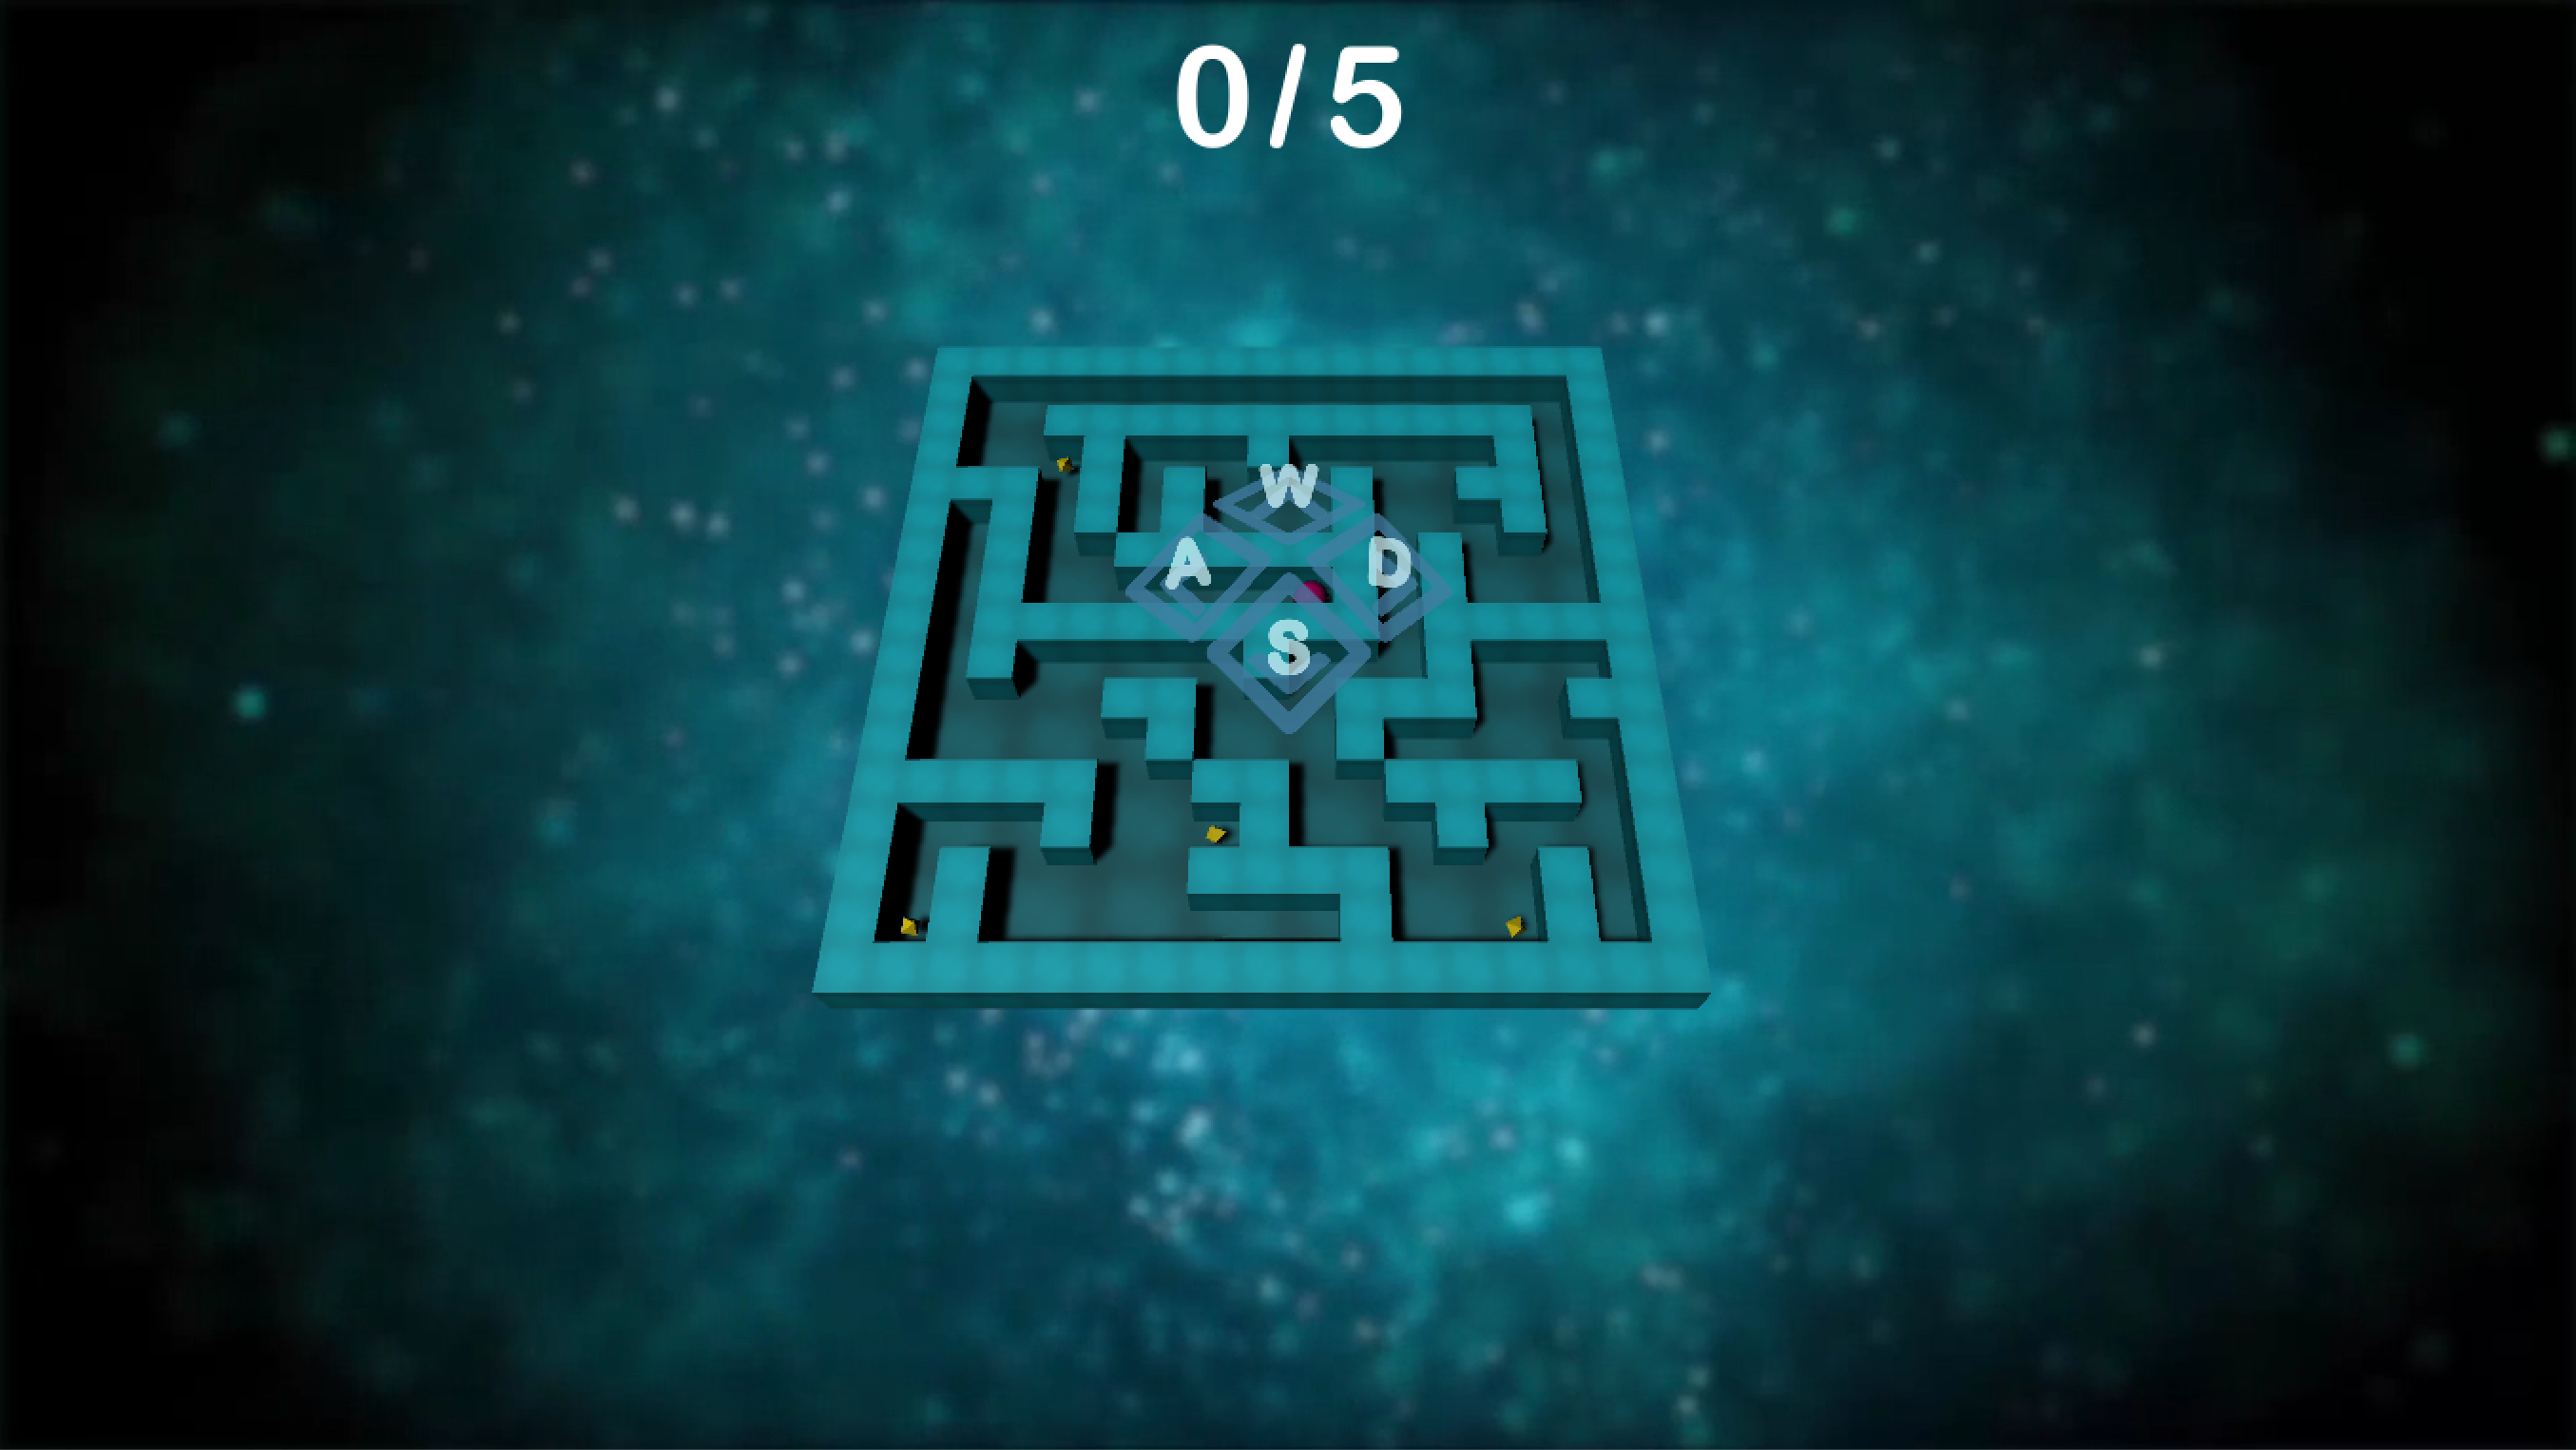 4d maze game